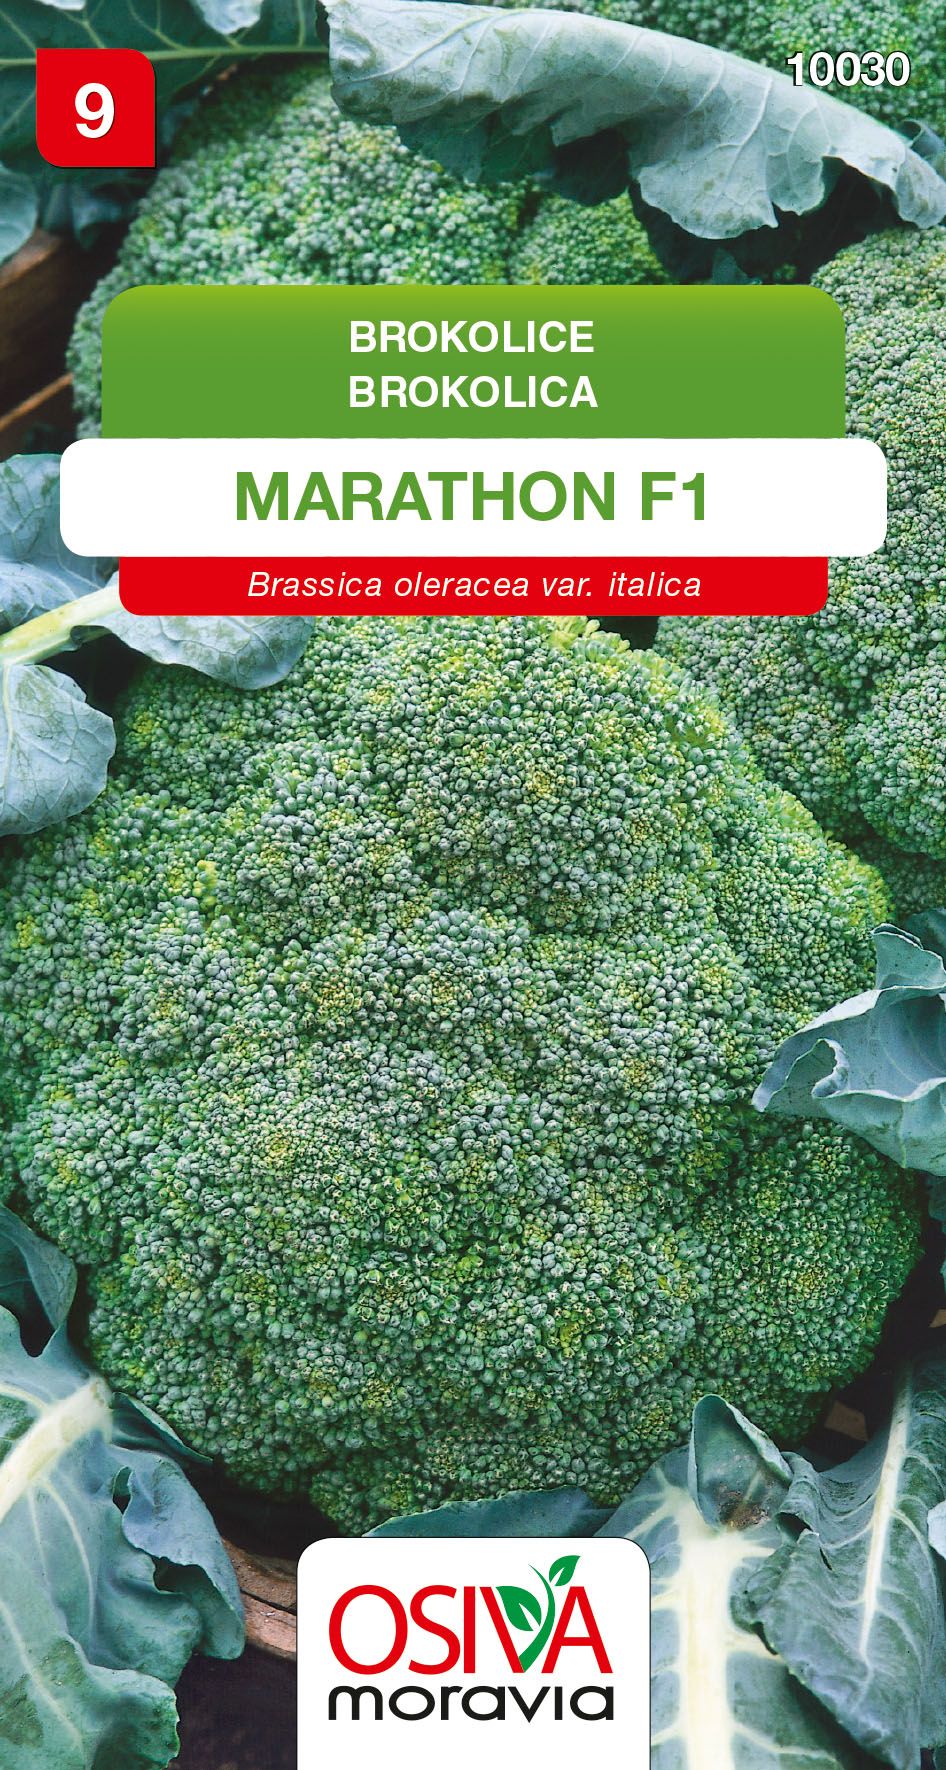 Brokolice - Marathon F1